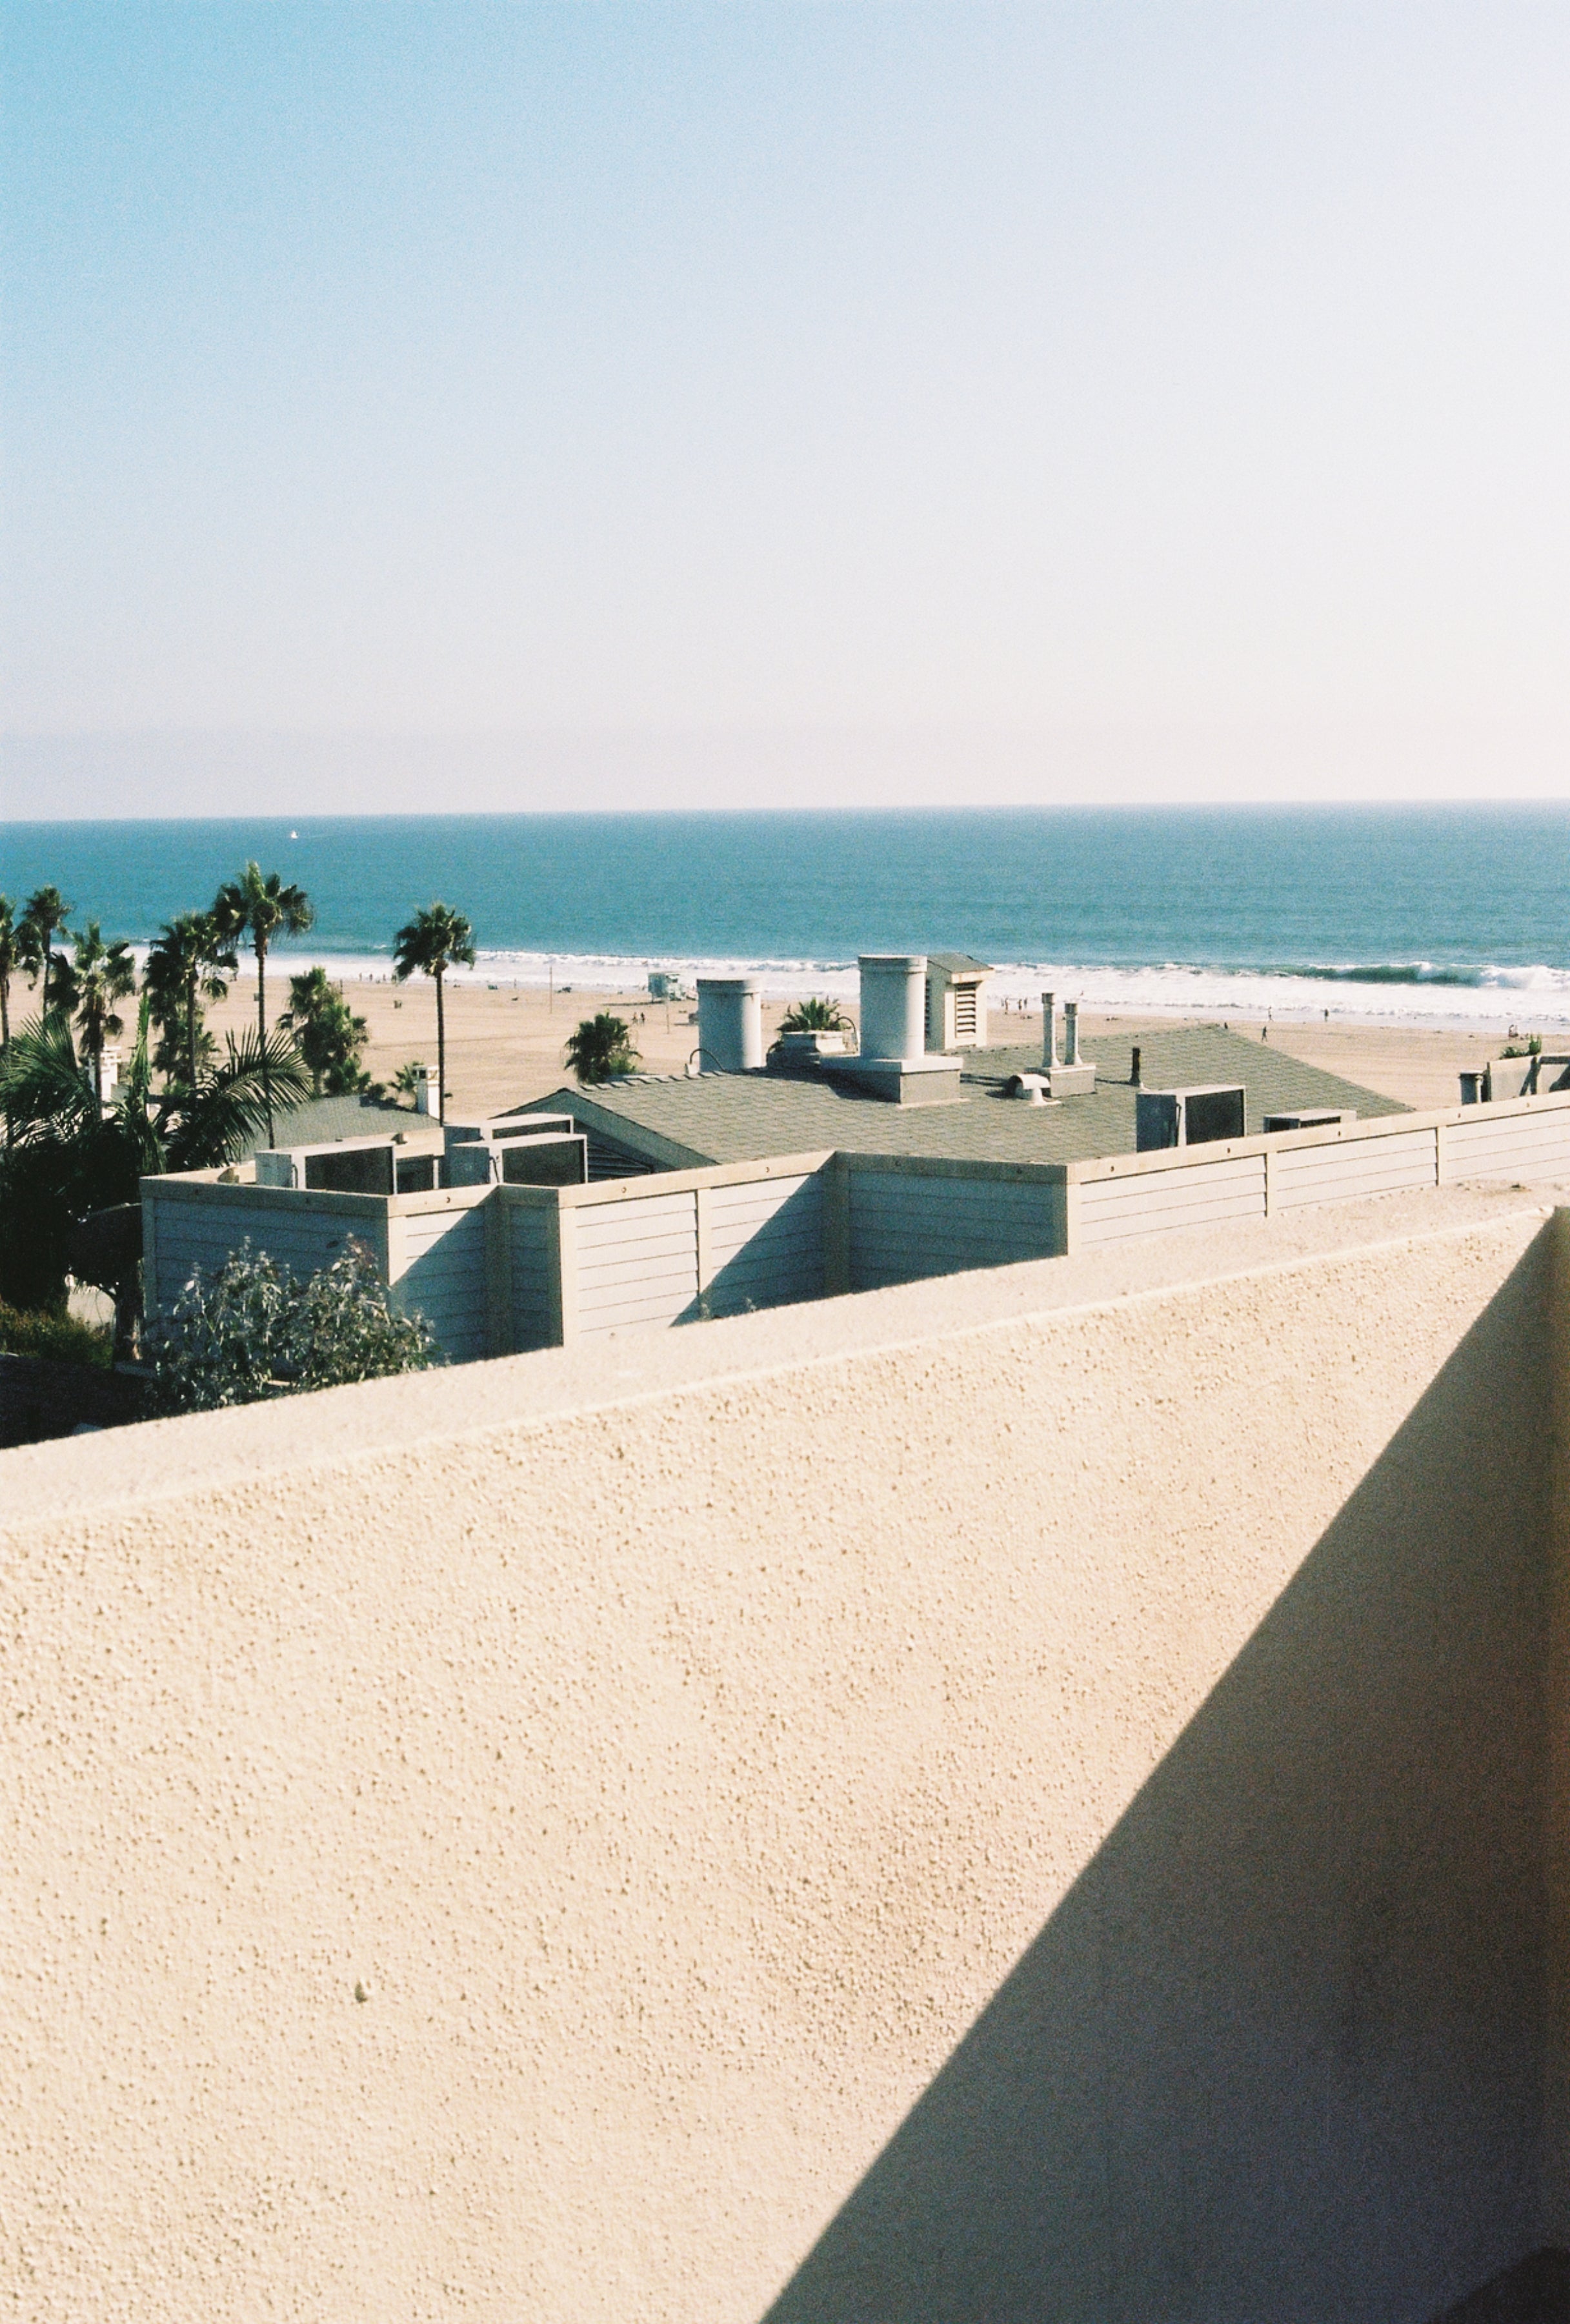 Santa Monica Ocean View Film